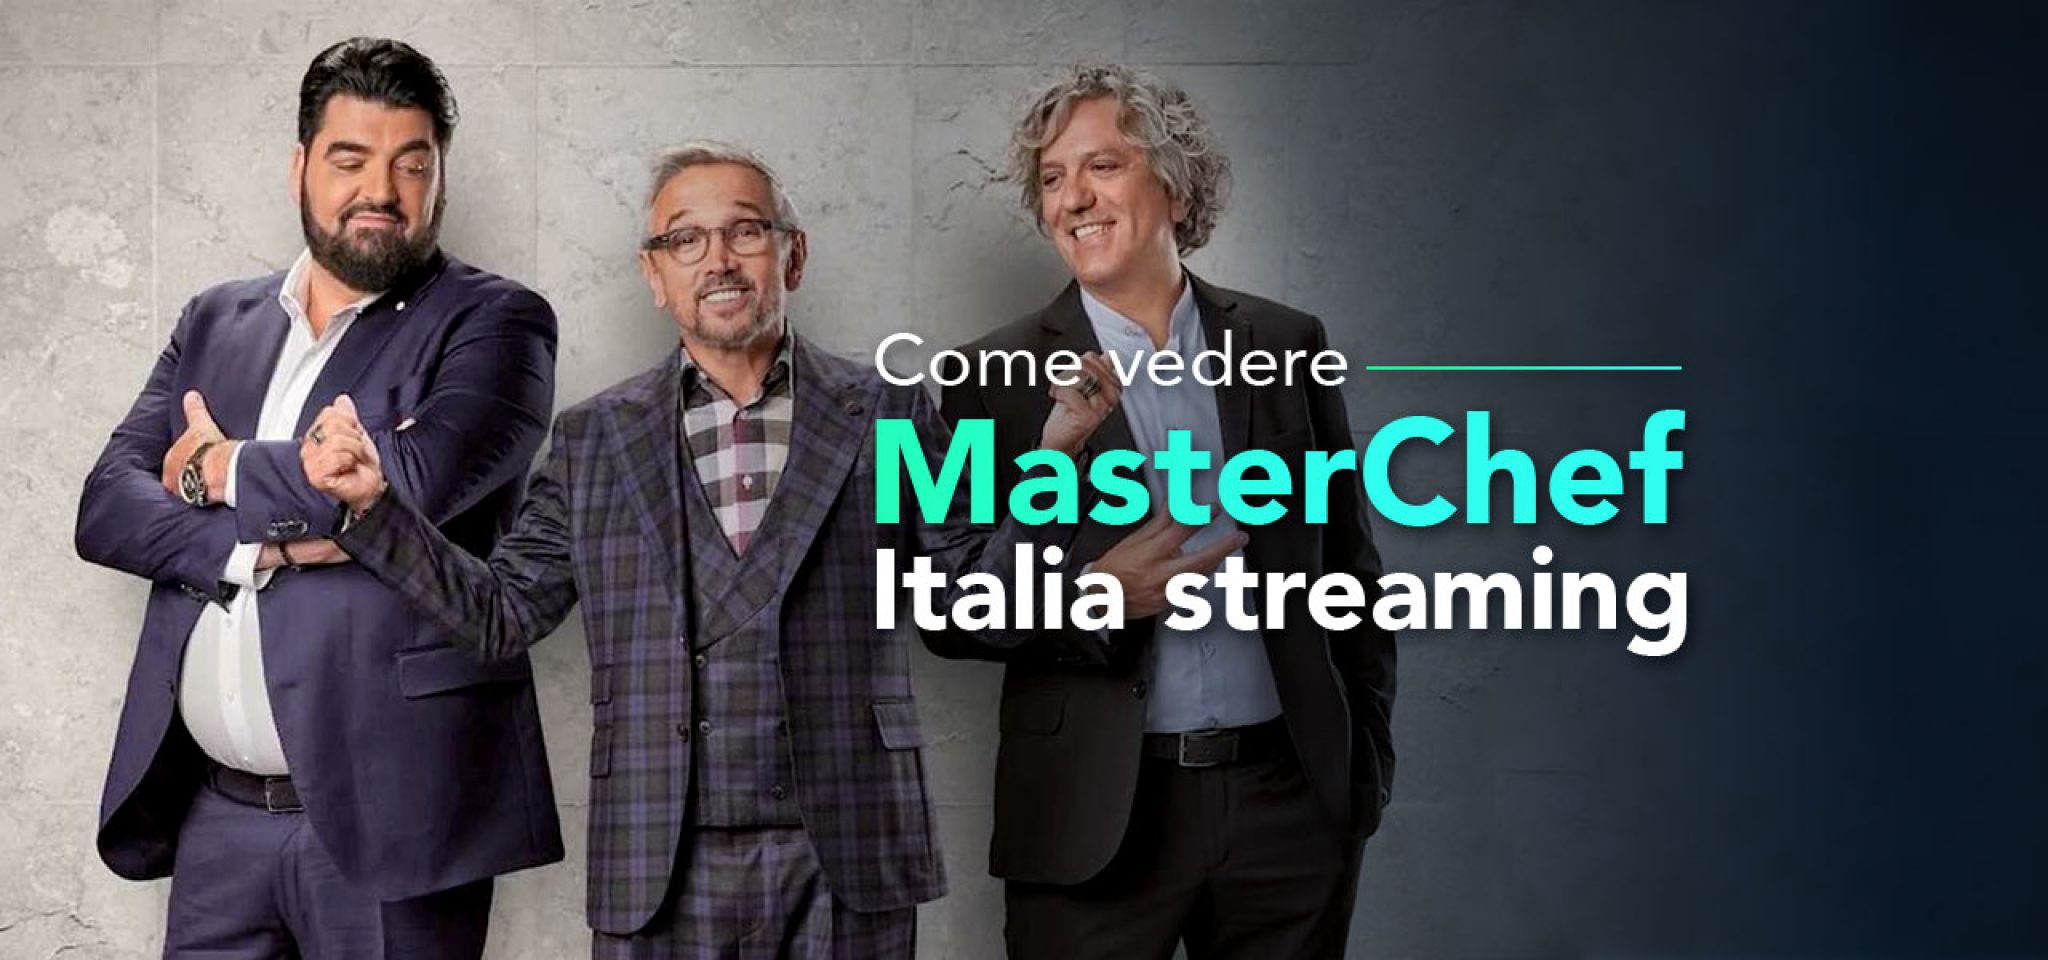 Come vedere MasterChef Italia 12 streaming? La Nostra Guida